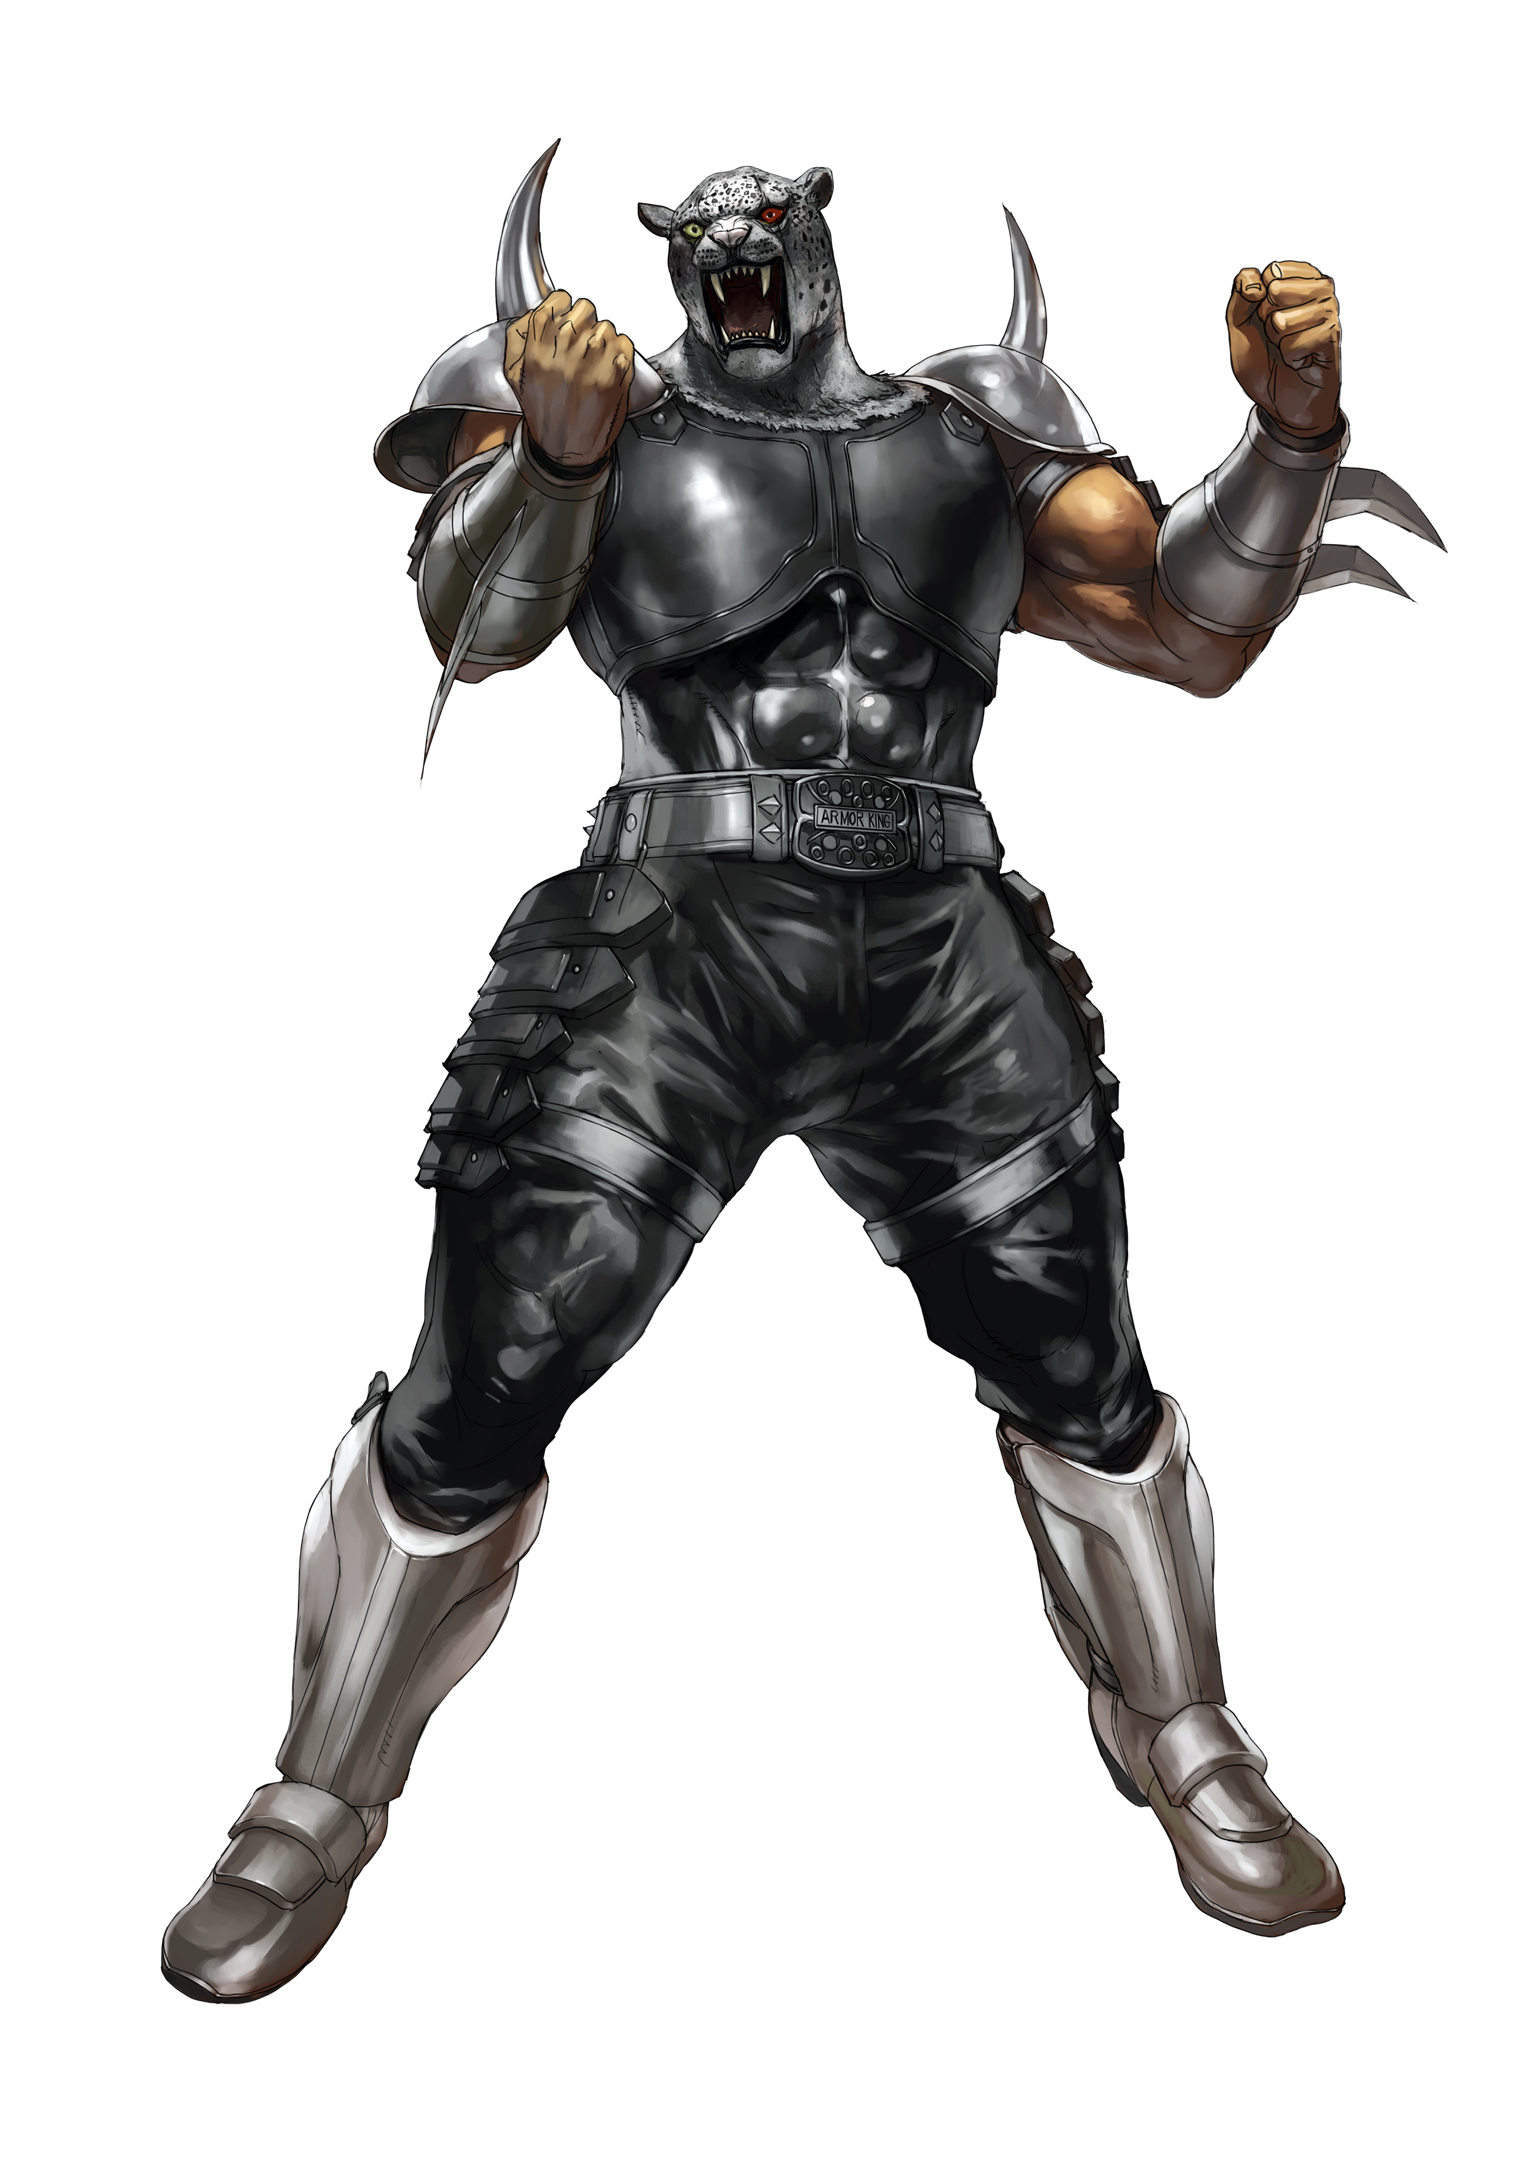 Armor King, Tekken Wiki